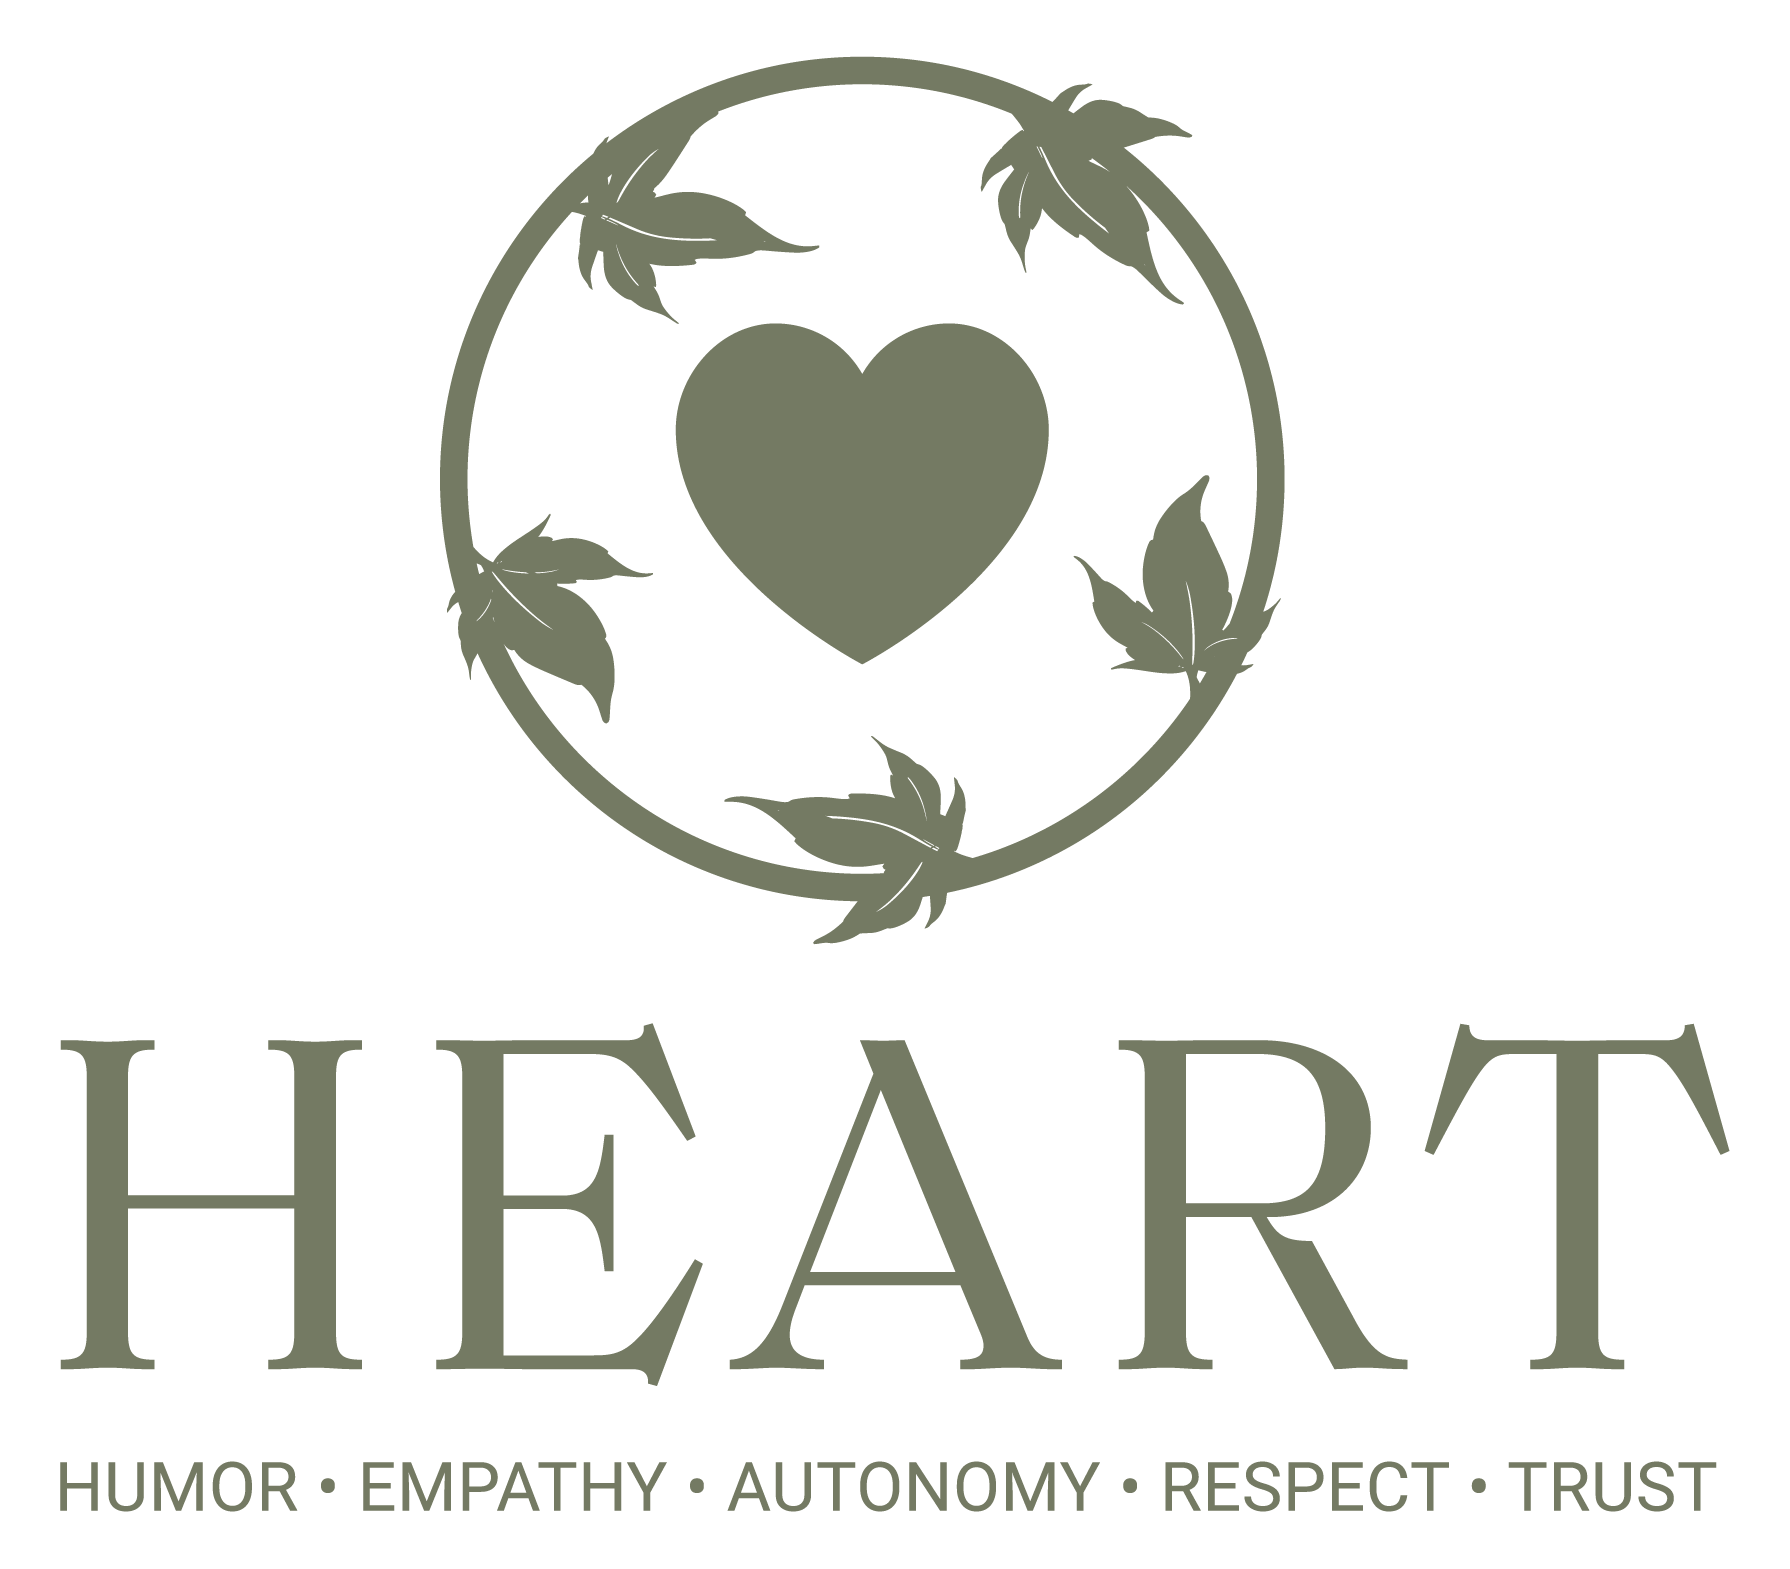 HEART - Humor, Empathy, Autonomy, Respect, Trust